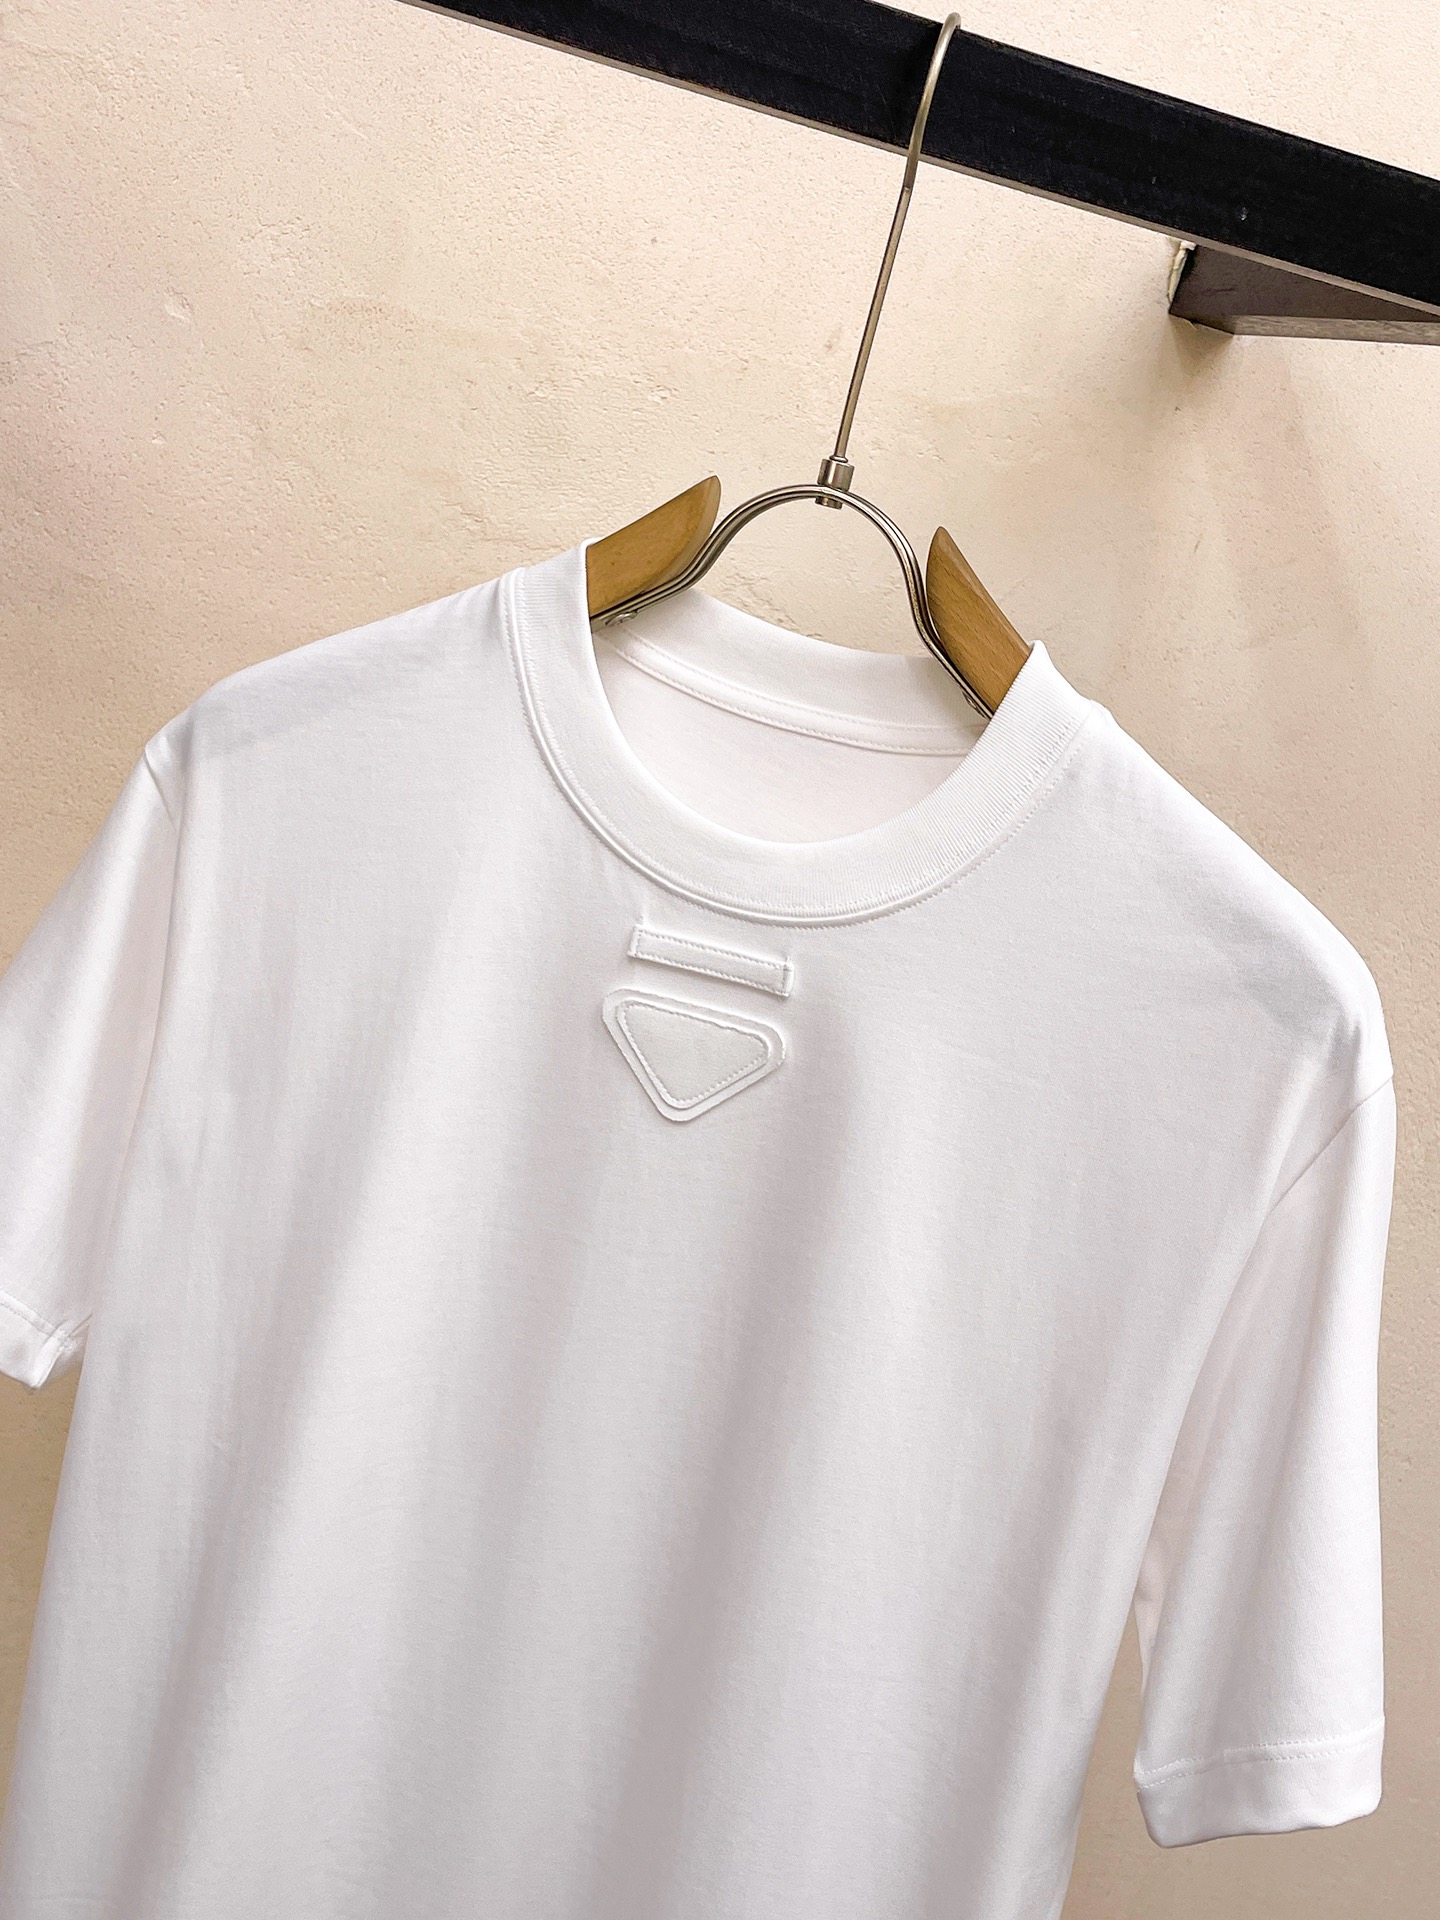 驚きの破格値人気の レディースプラダtシャツn級品 通気性 ブランドの特徴 優れたデザイン_3